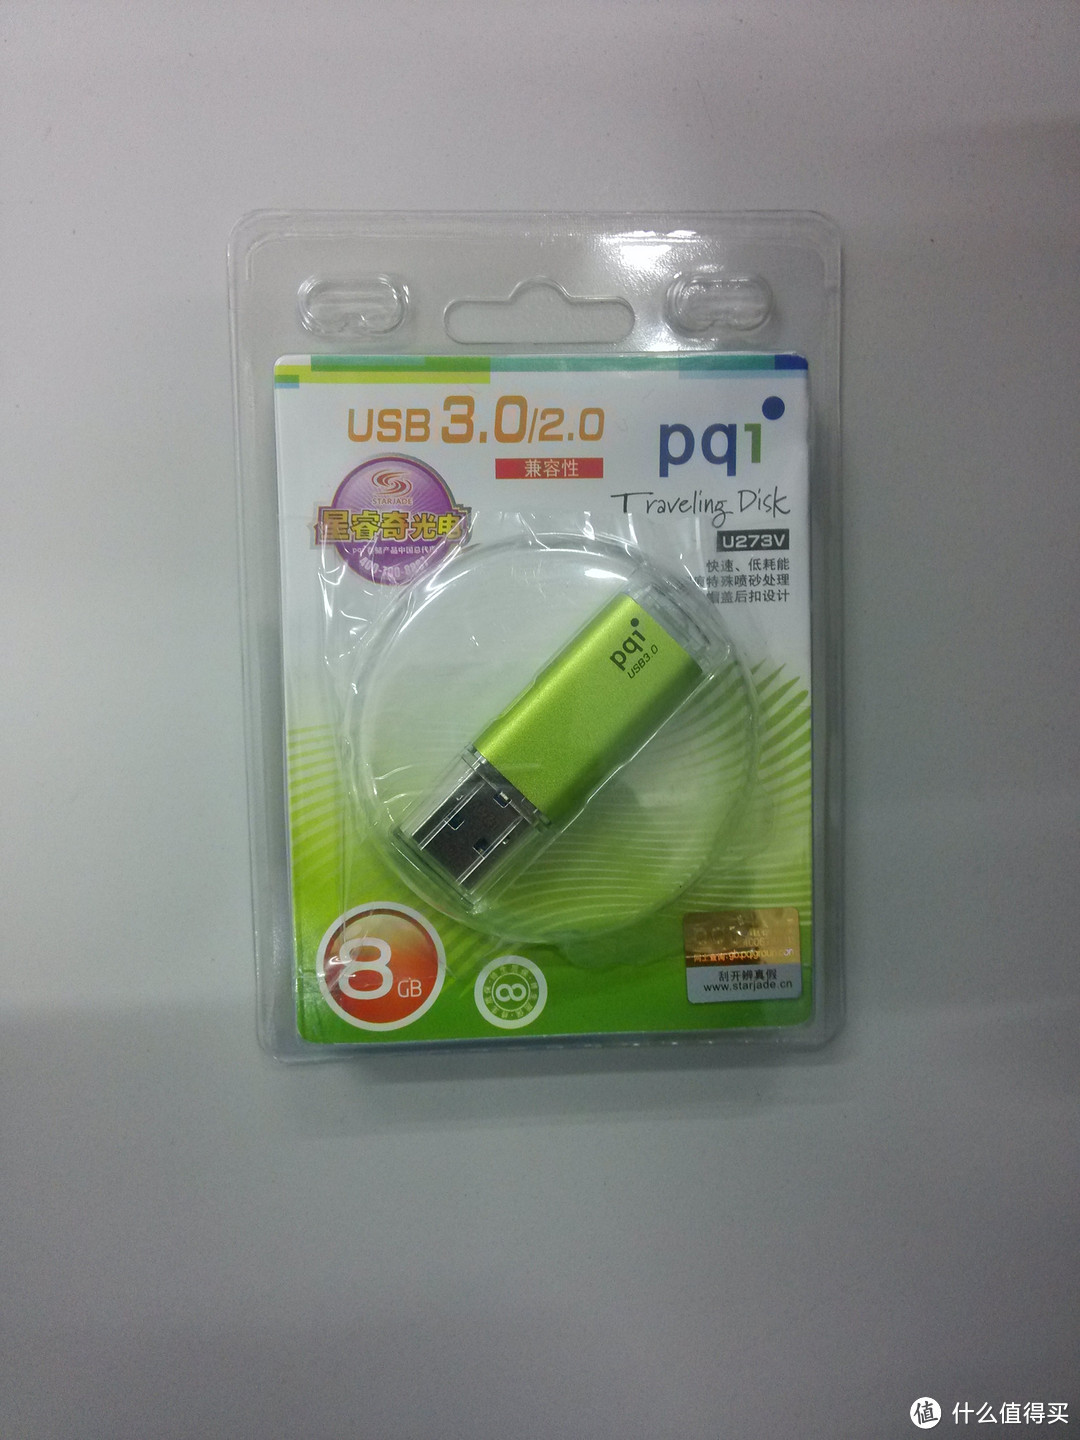 为“劲永”正名：晒 PQI 劲永 U273V 8G U盘 USB 3.0